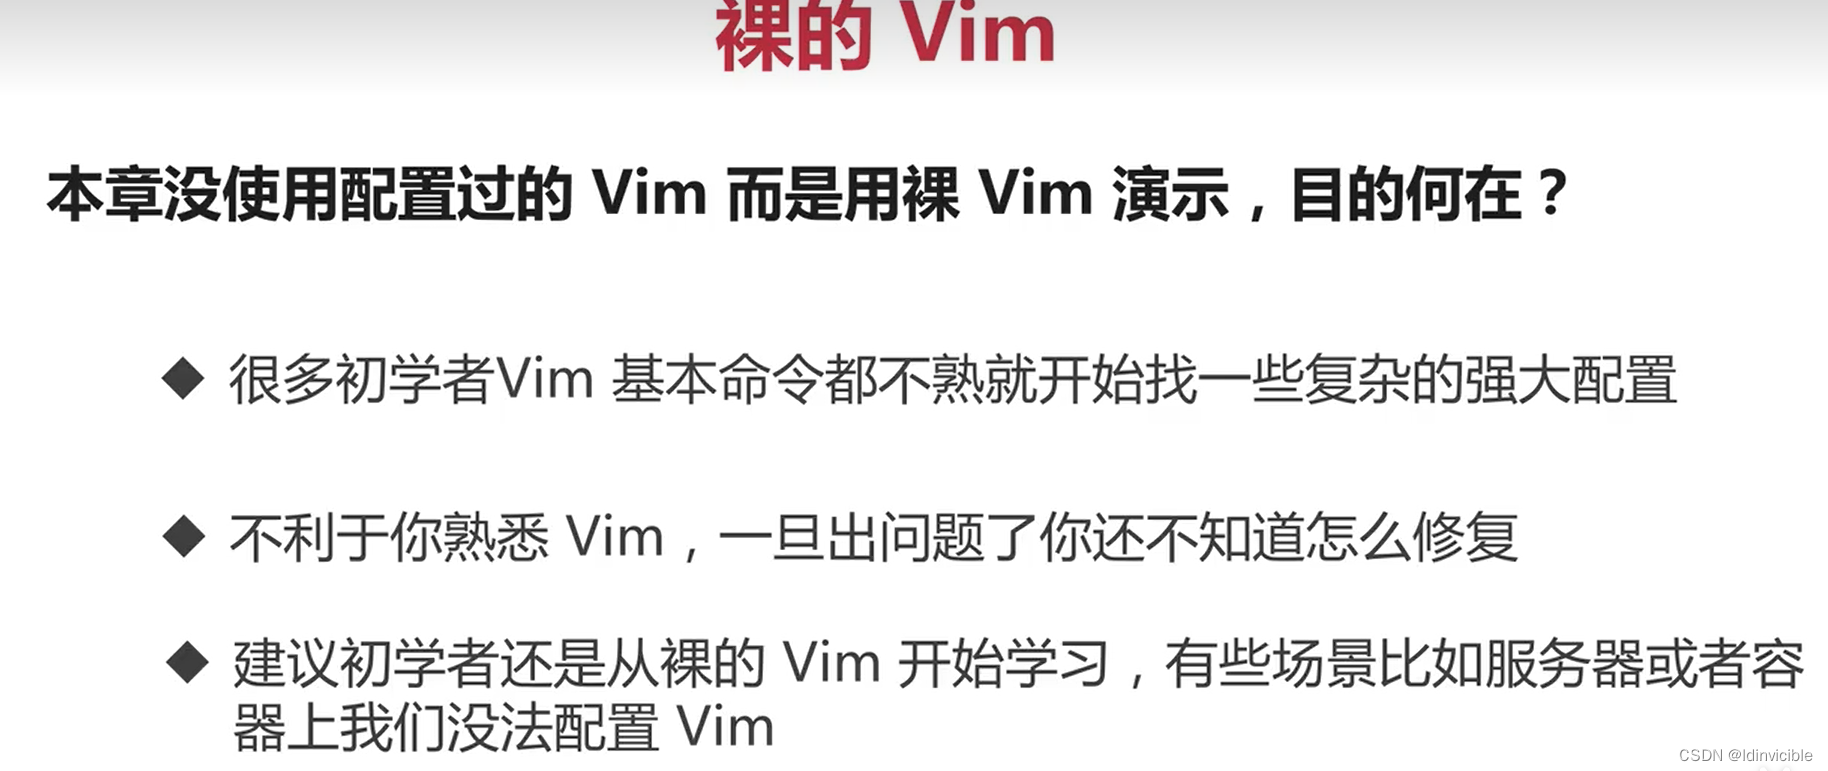 【VIM】初步认识VIM-2_搜索_49